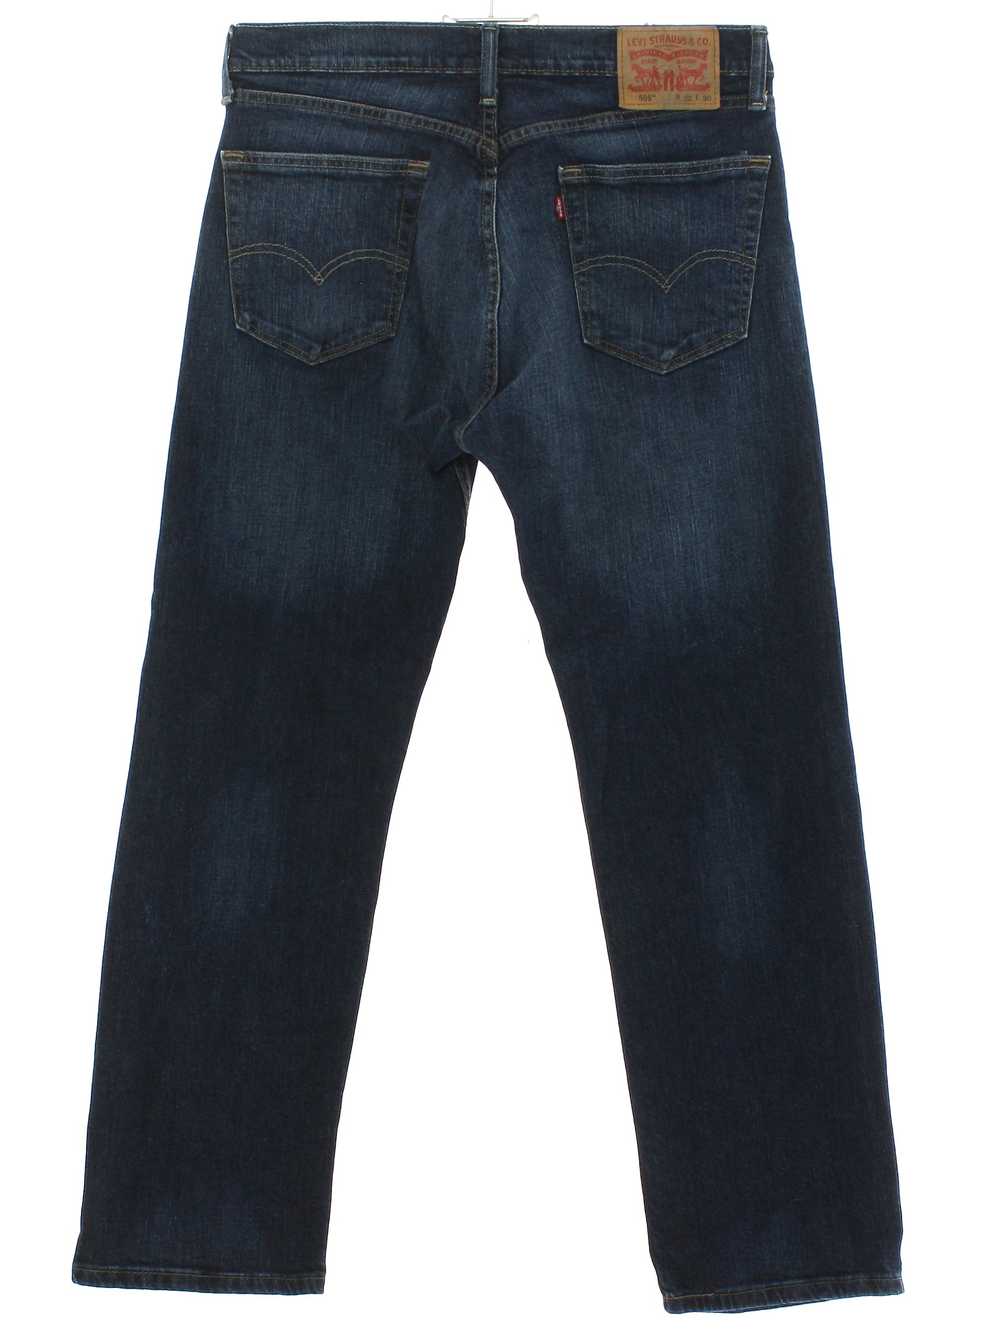 1990's Levis 505 Mens Levis 505 Jeans Pants - image 3